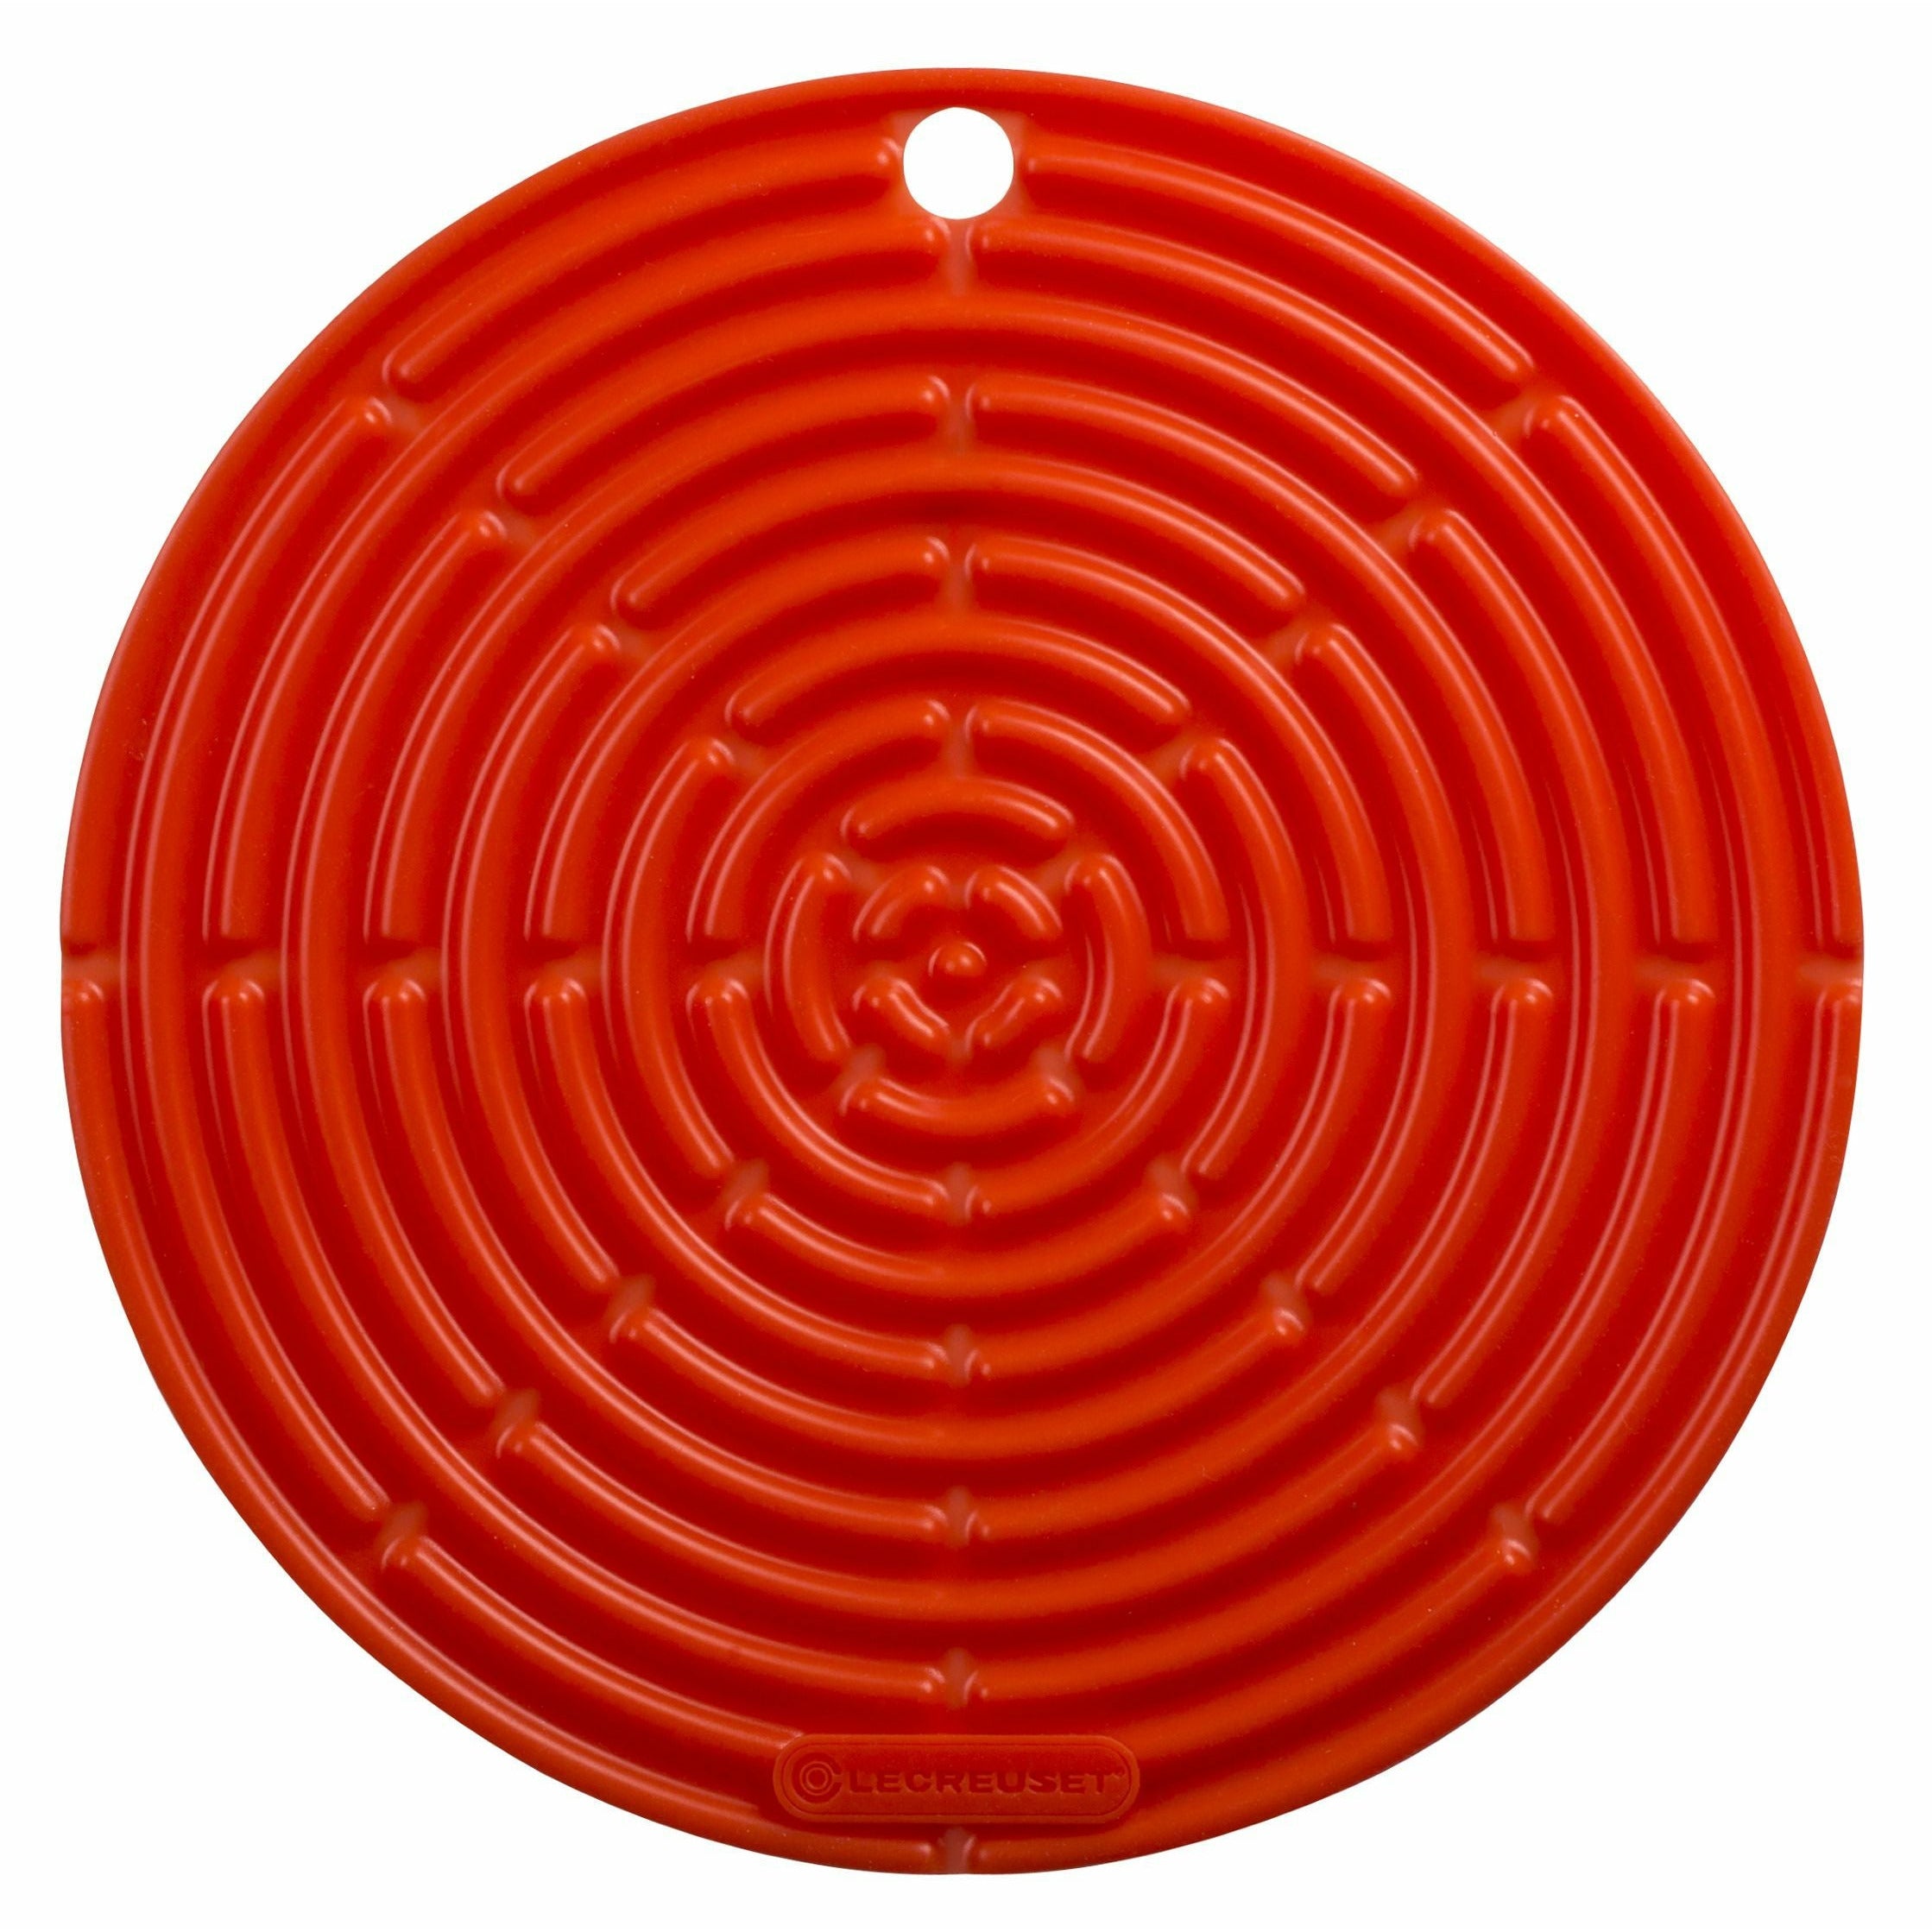 Le Creuset Pyöreä Potholder Classic 20,5 cm, uuni punainen